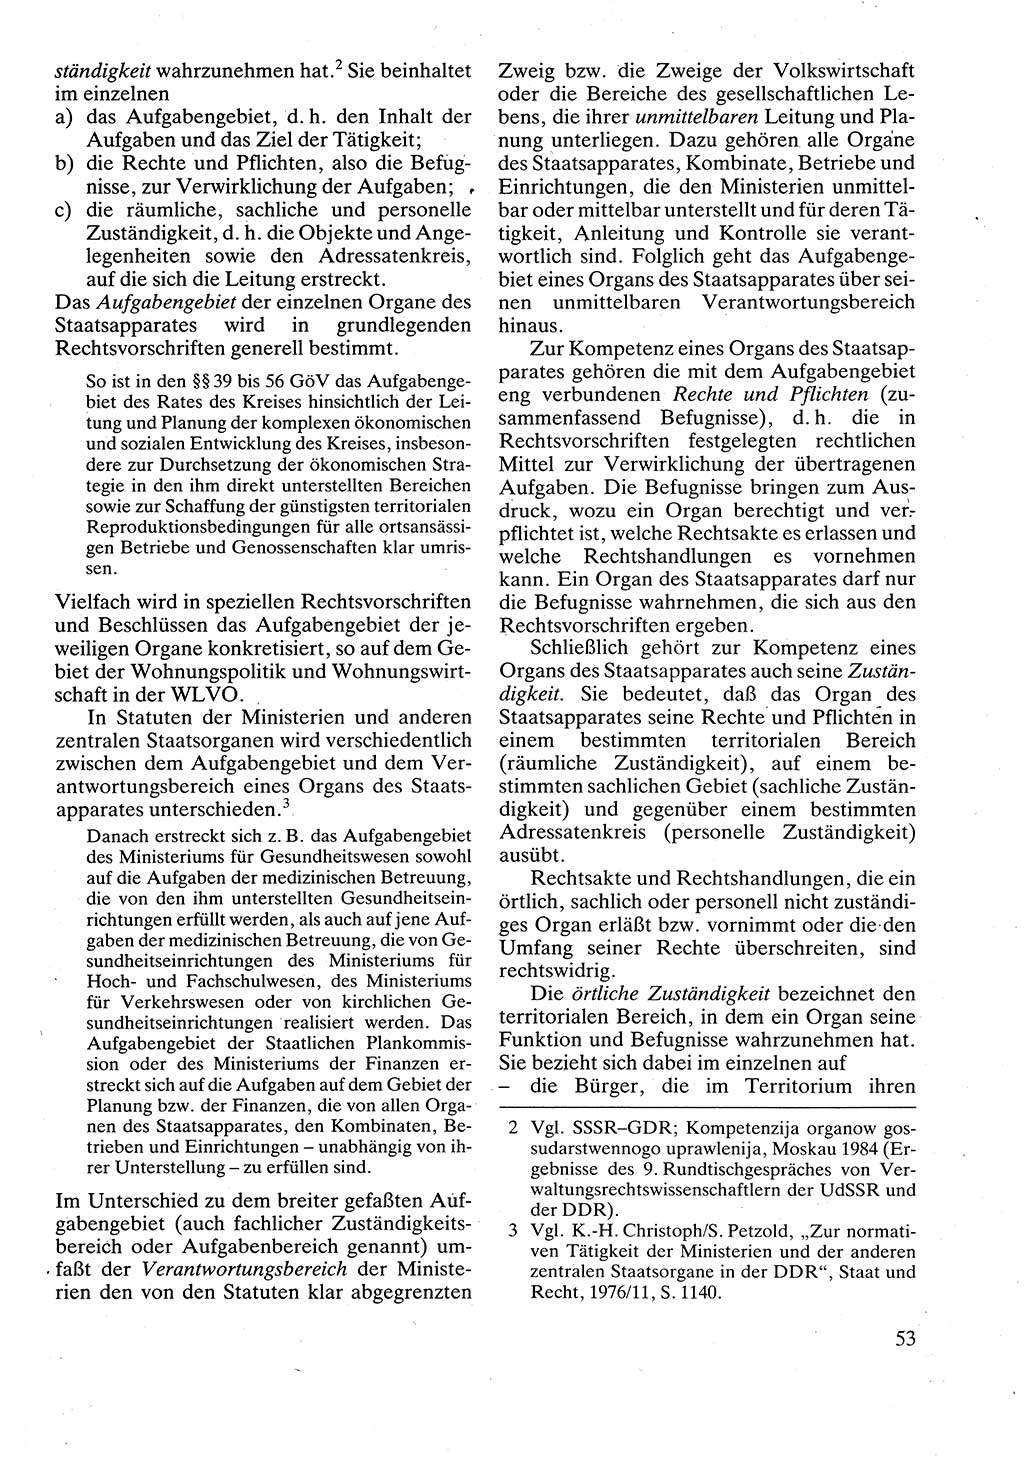 Verwaltungsrecht [Deutsche Demokratische Republik (DDR)], Lehrbuch 1988, Seite 53 (Verw.-R. DDR Lb. 1988, S. 53)